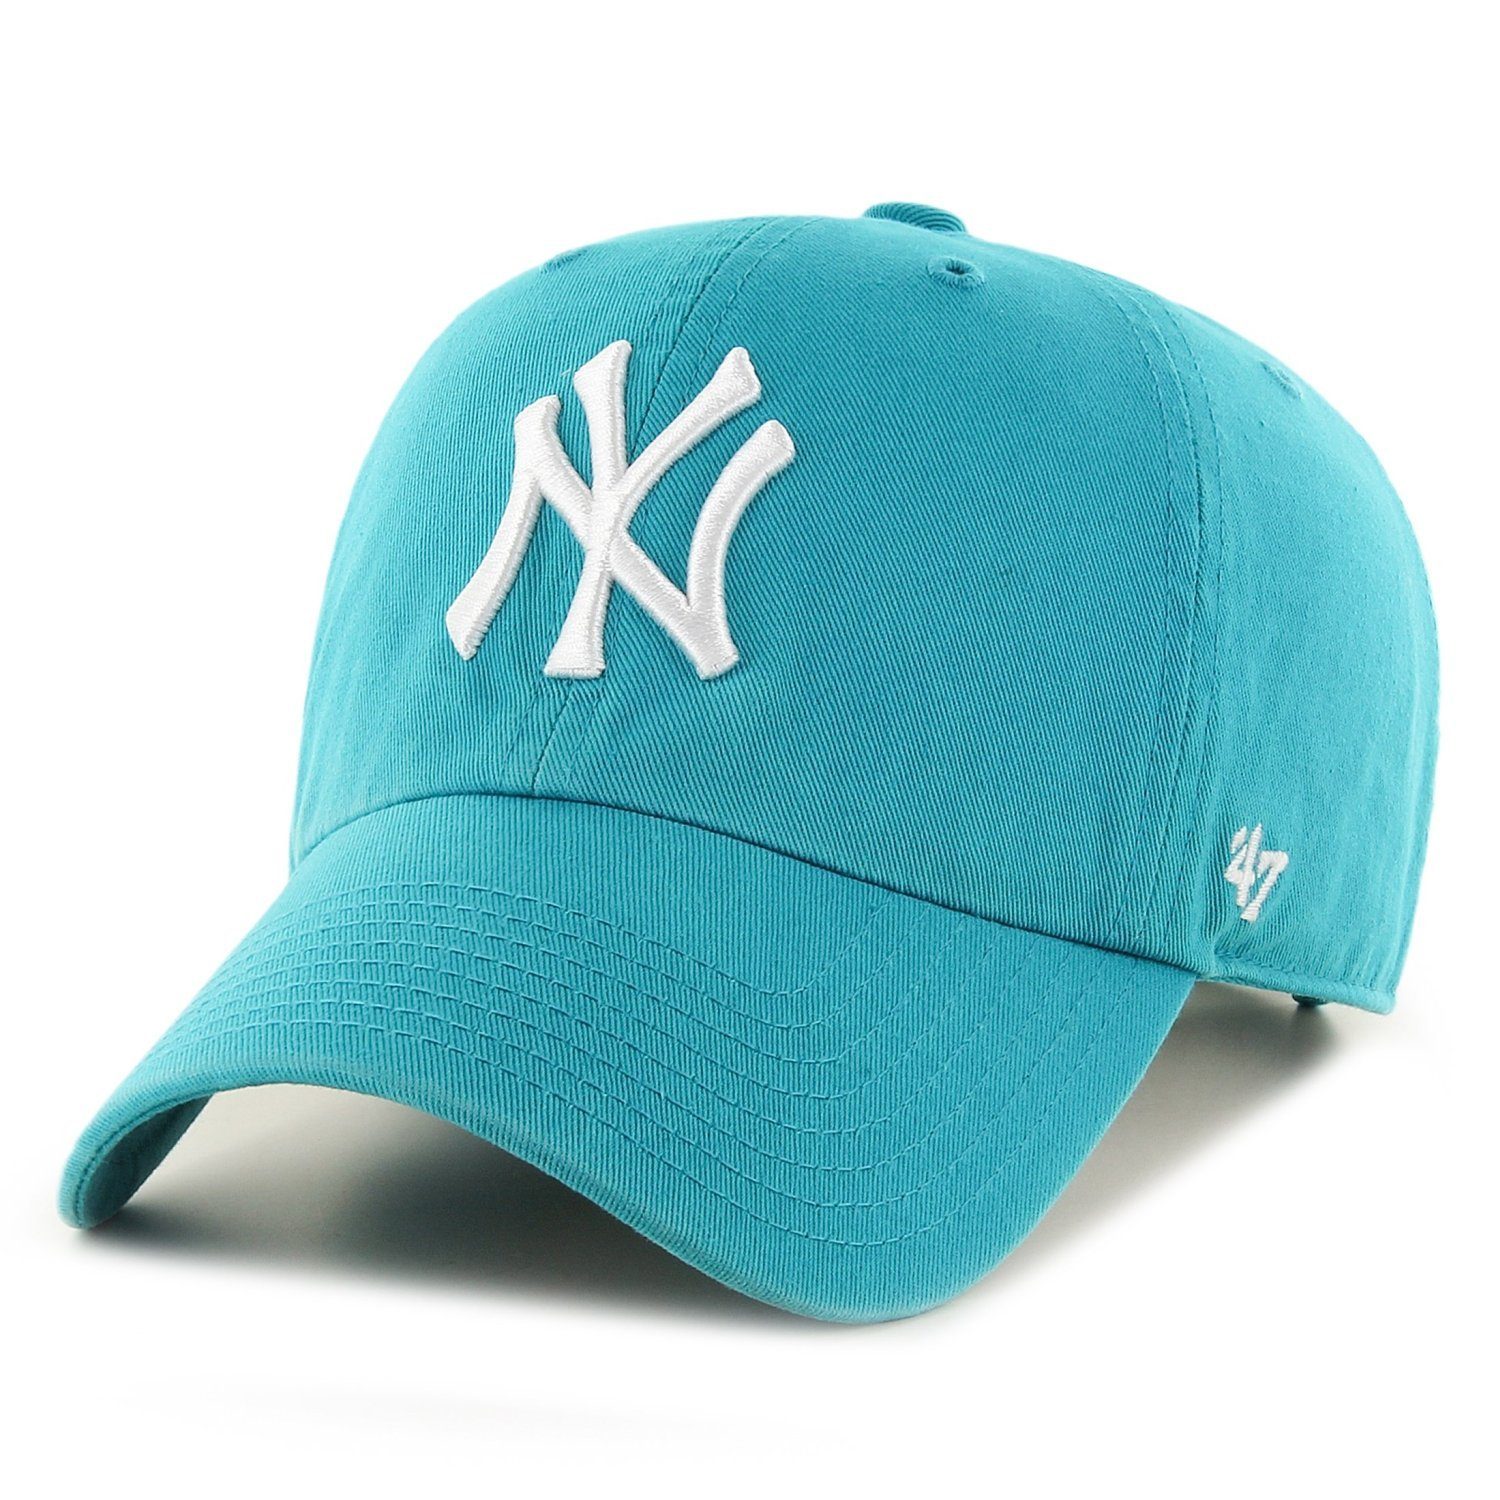 '47 Brand Trucker Cap Relaxed Fit MLB New York Yankees neptune